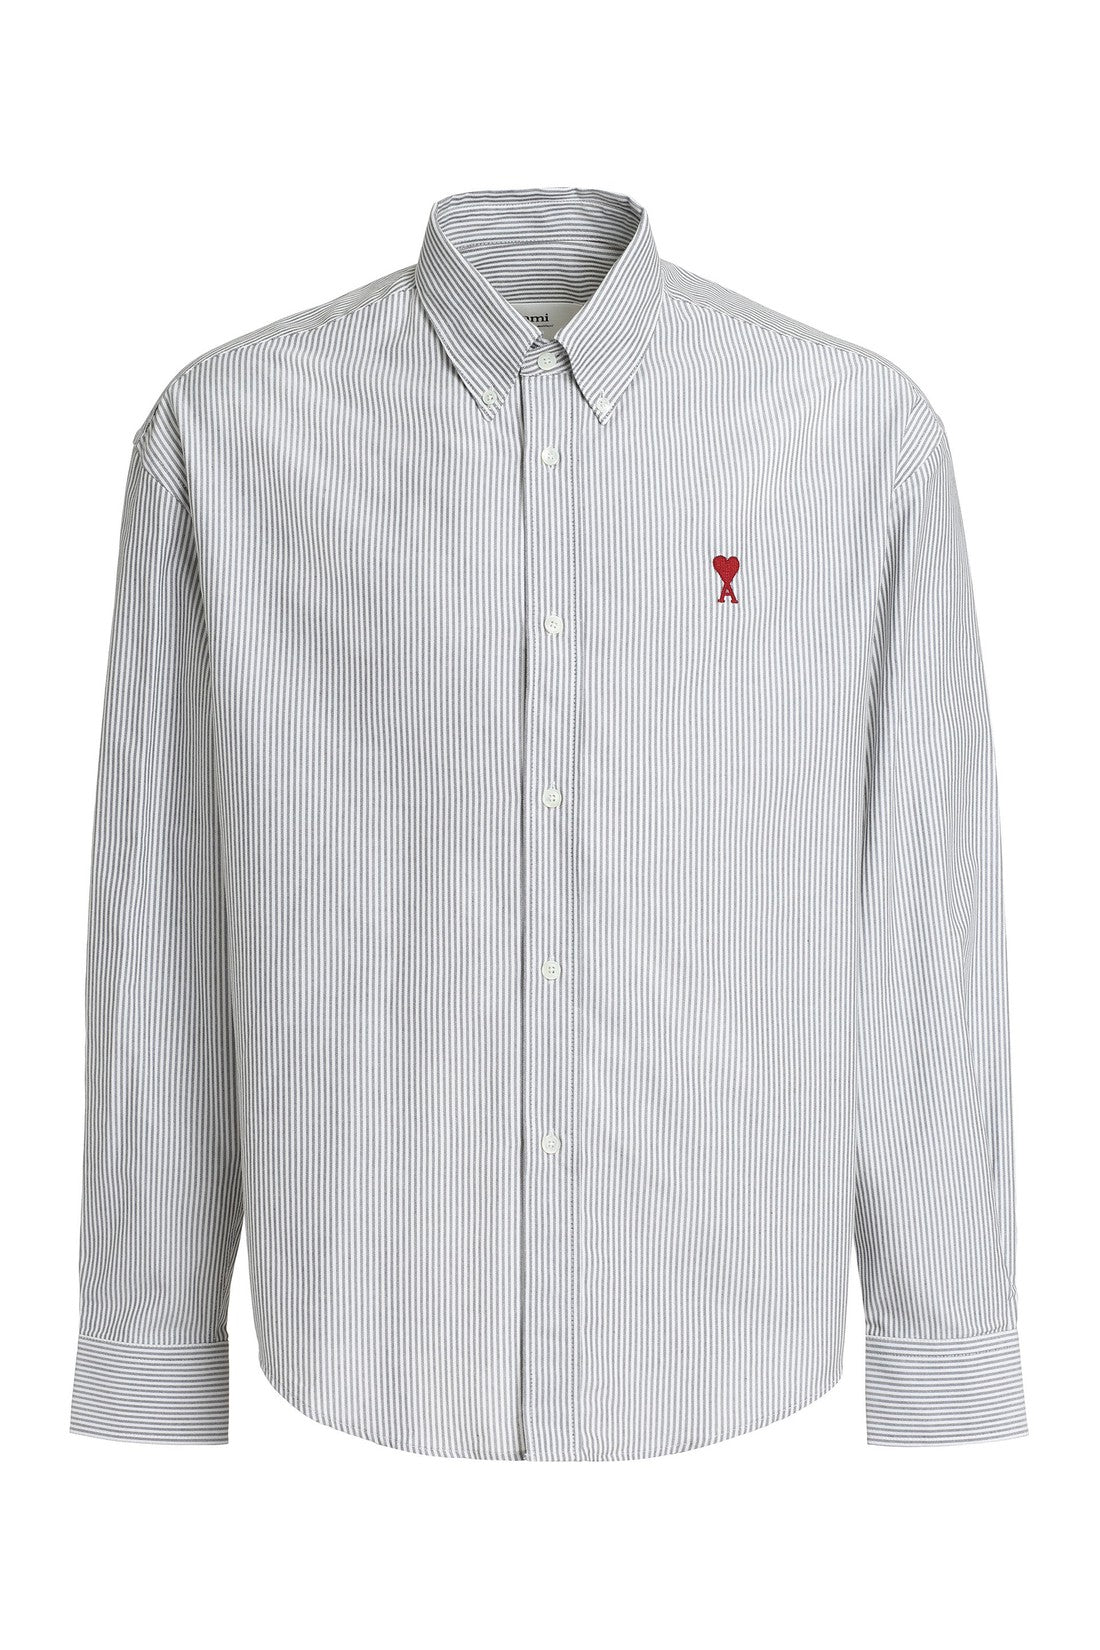 AMI PARIS-OUTLET-SALE-Cotton button-down shirt-ARCHIVIST